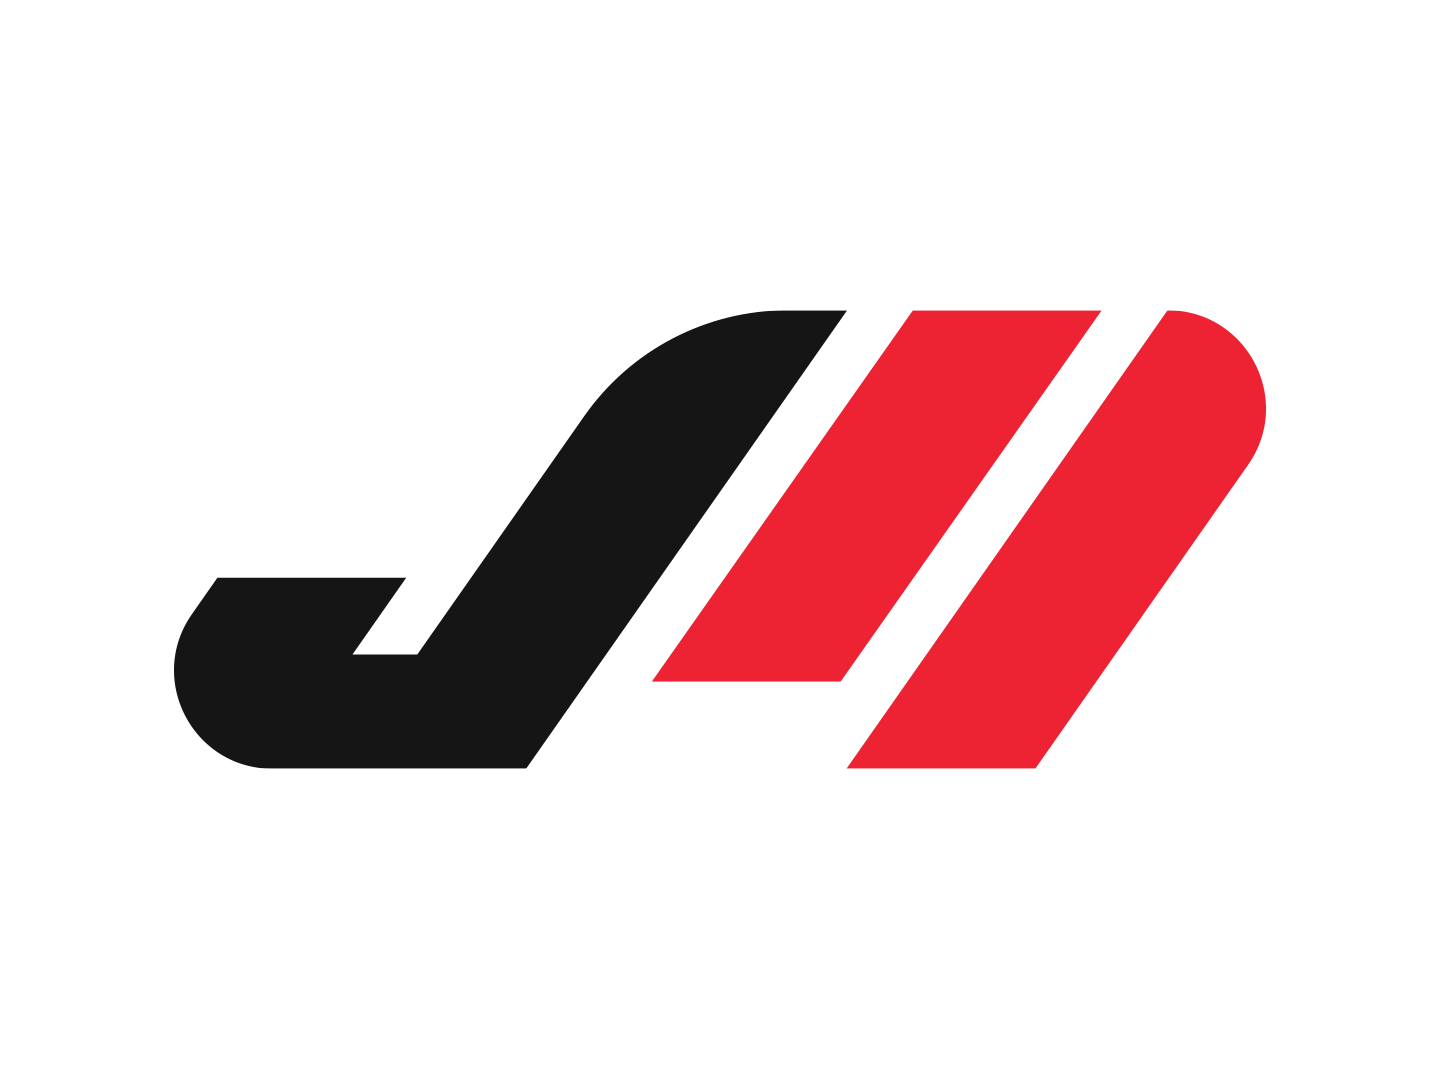 JM Logo - JM Logo Mark by Benjamin Grey on Dribbble